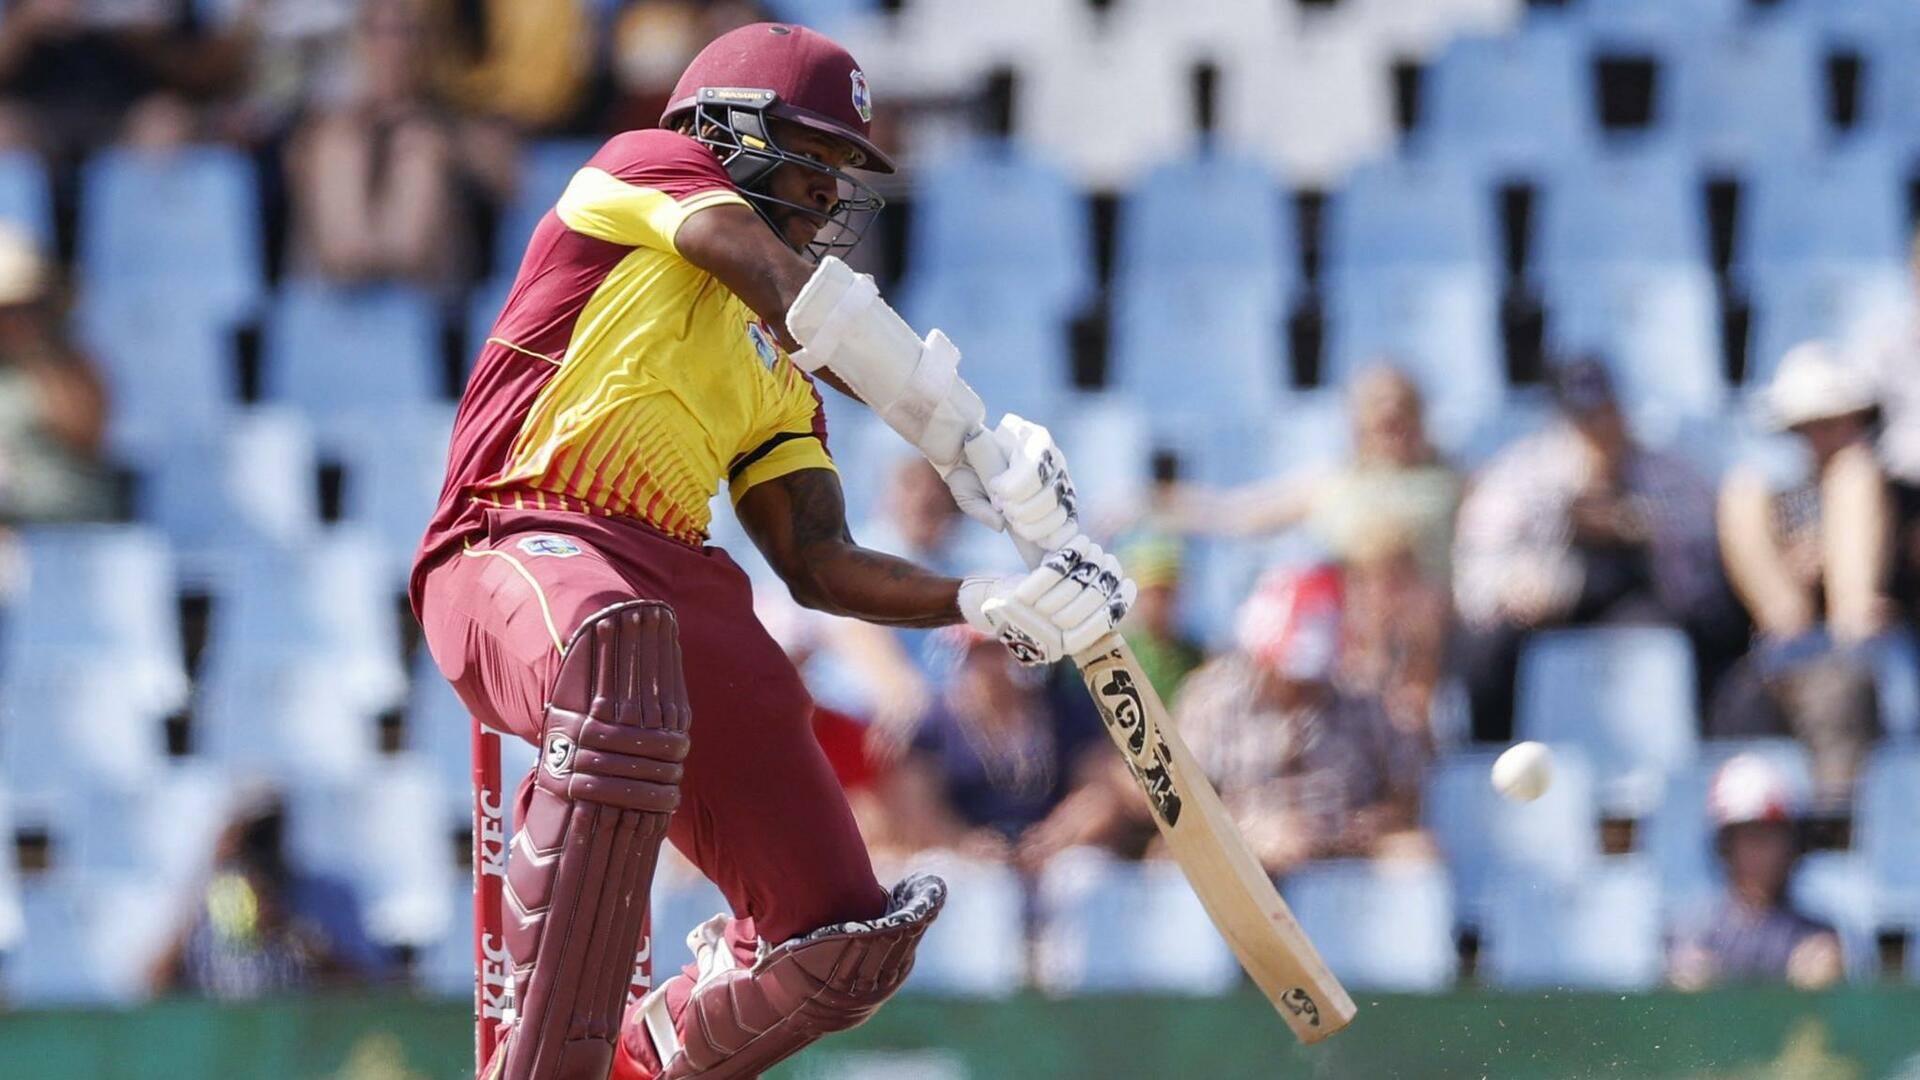 काइल मेयर्स ने लगाया दक्षिण अफ्रीका के खिलाफ अपना पहला टी-20 अंतरराष्ट्रीय अर्धशतक